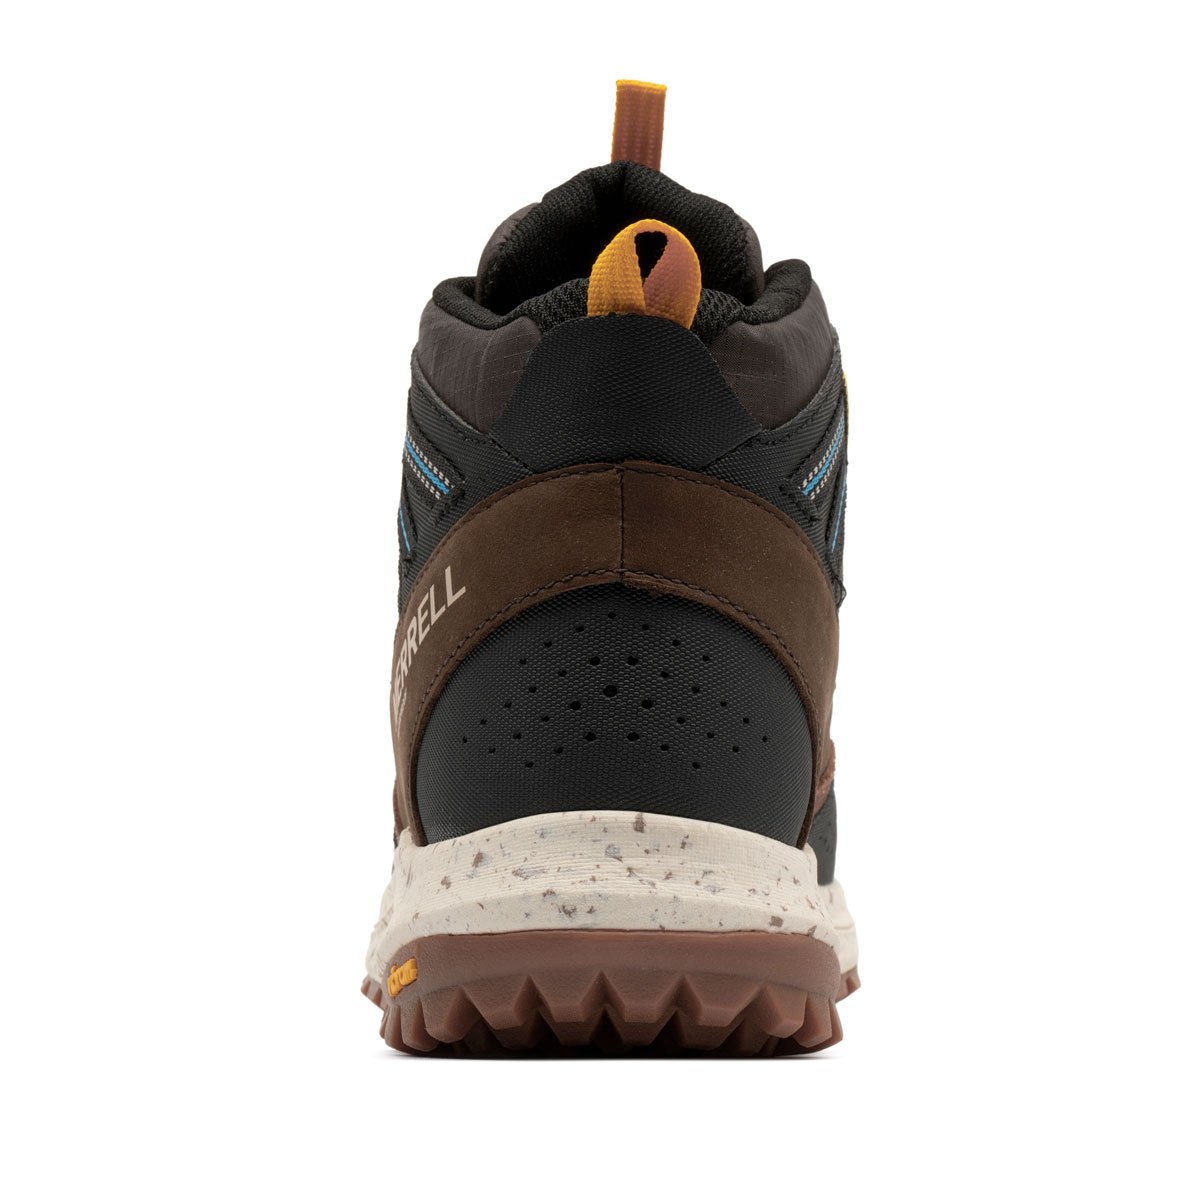 Merrell Nova Sneaker Boot Bungee WaterProof